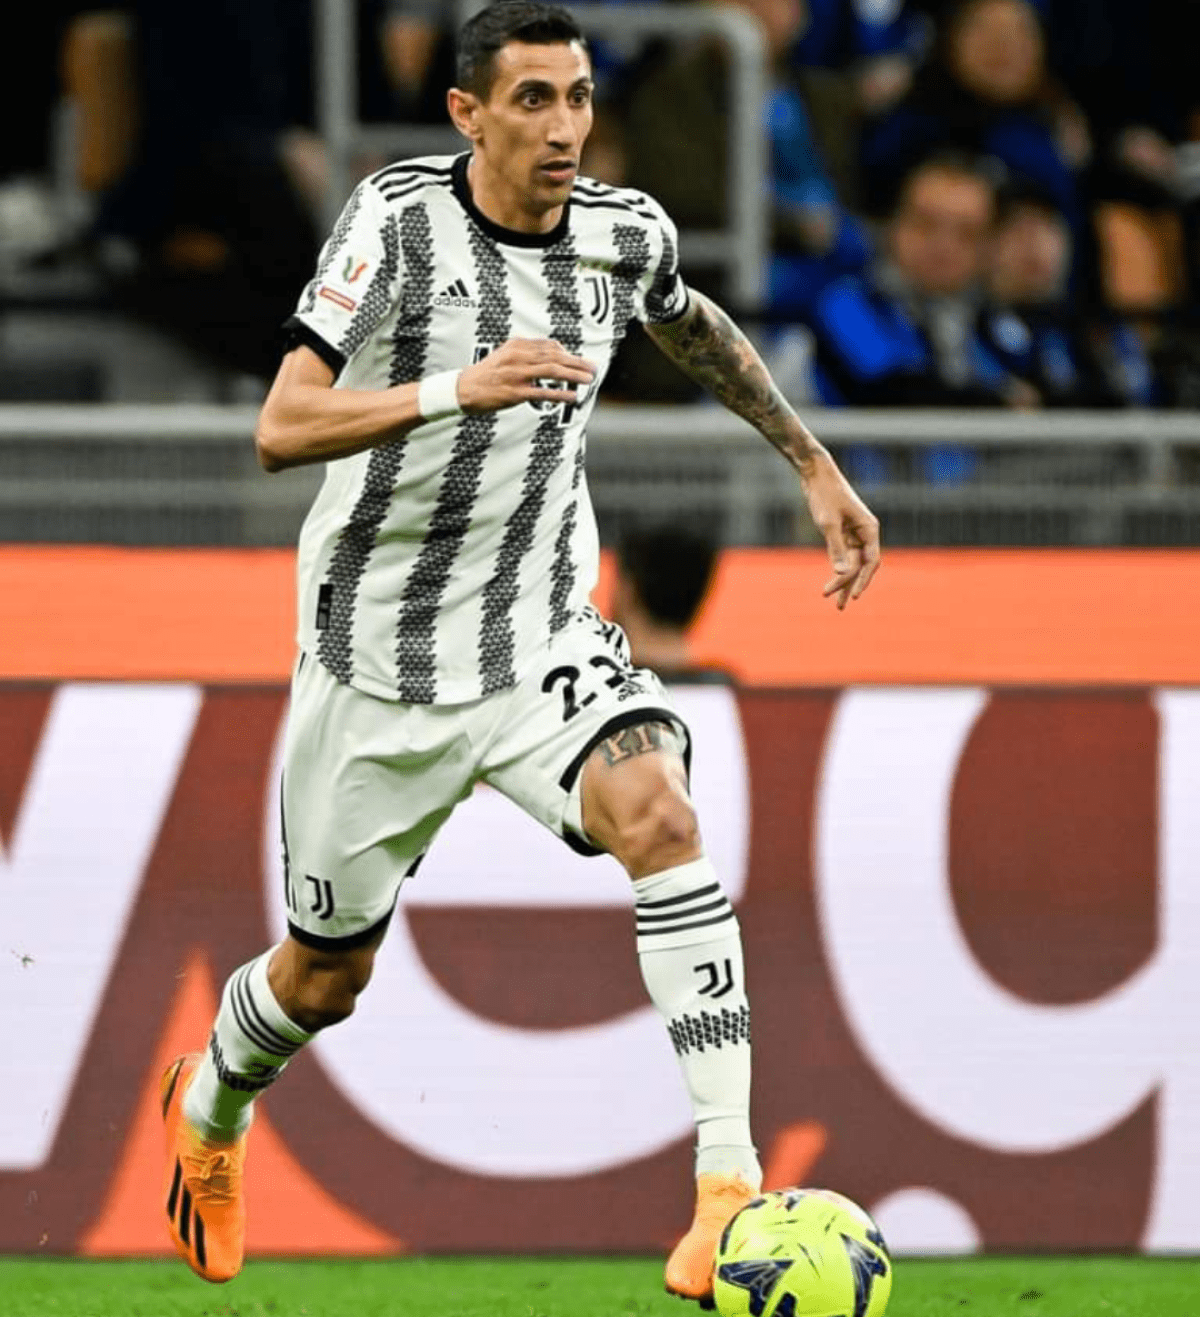 Coppa Italia, Inter-Juventus (1-0): analisi tattica e considerazioni